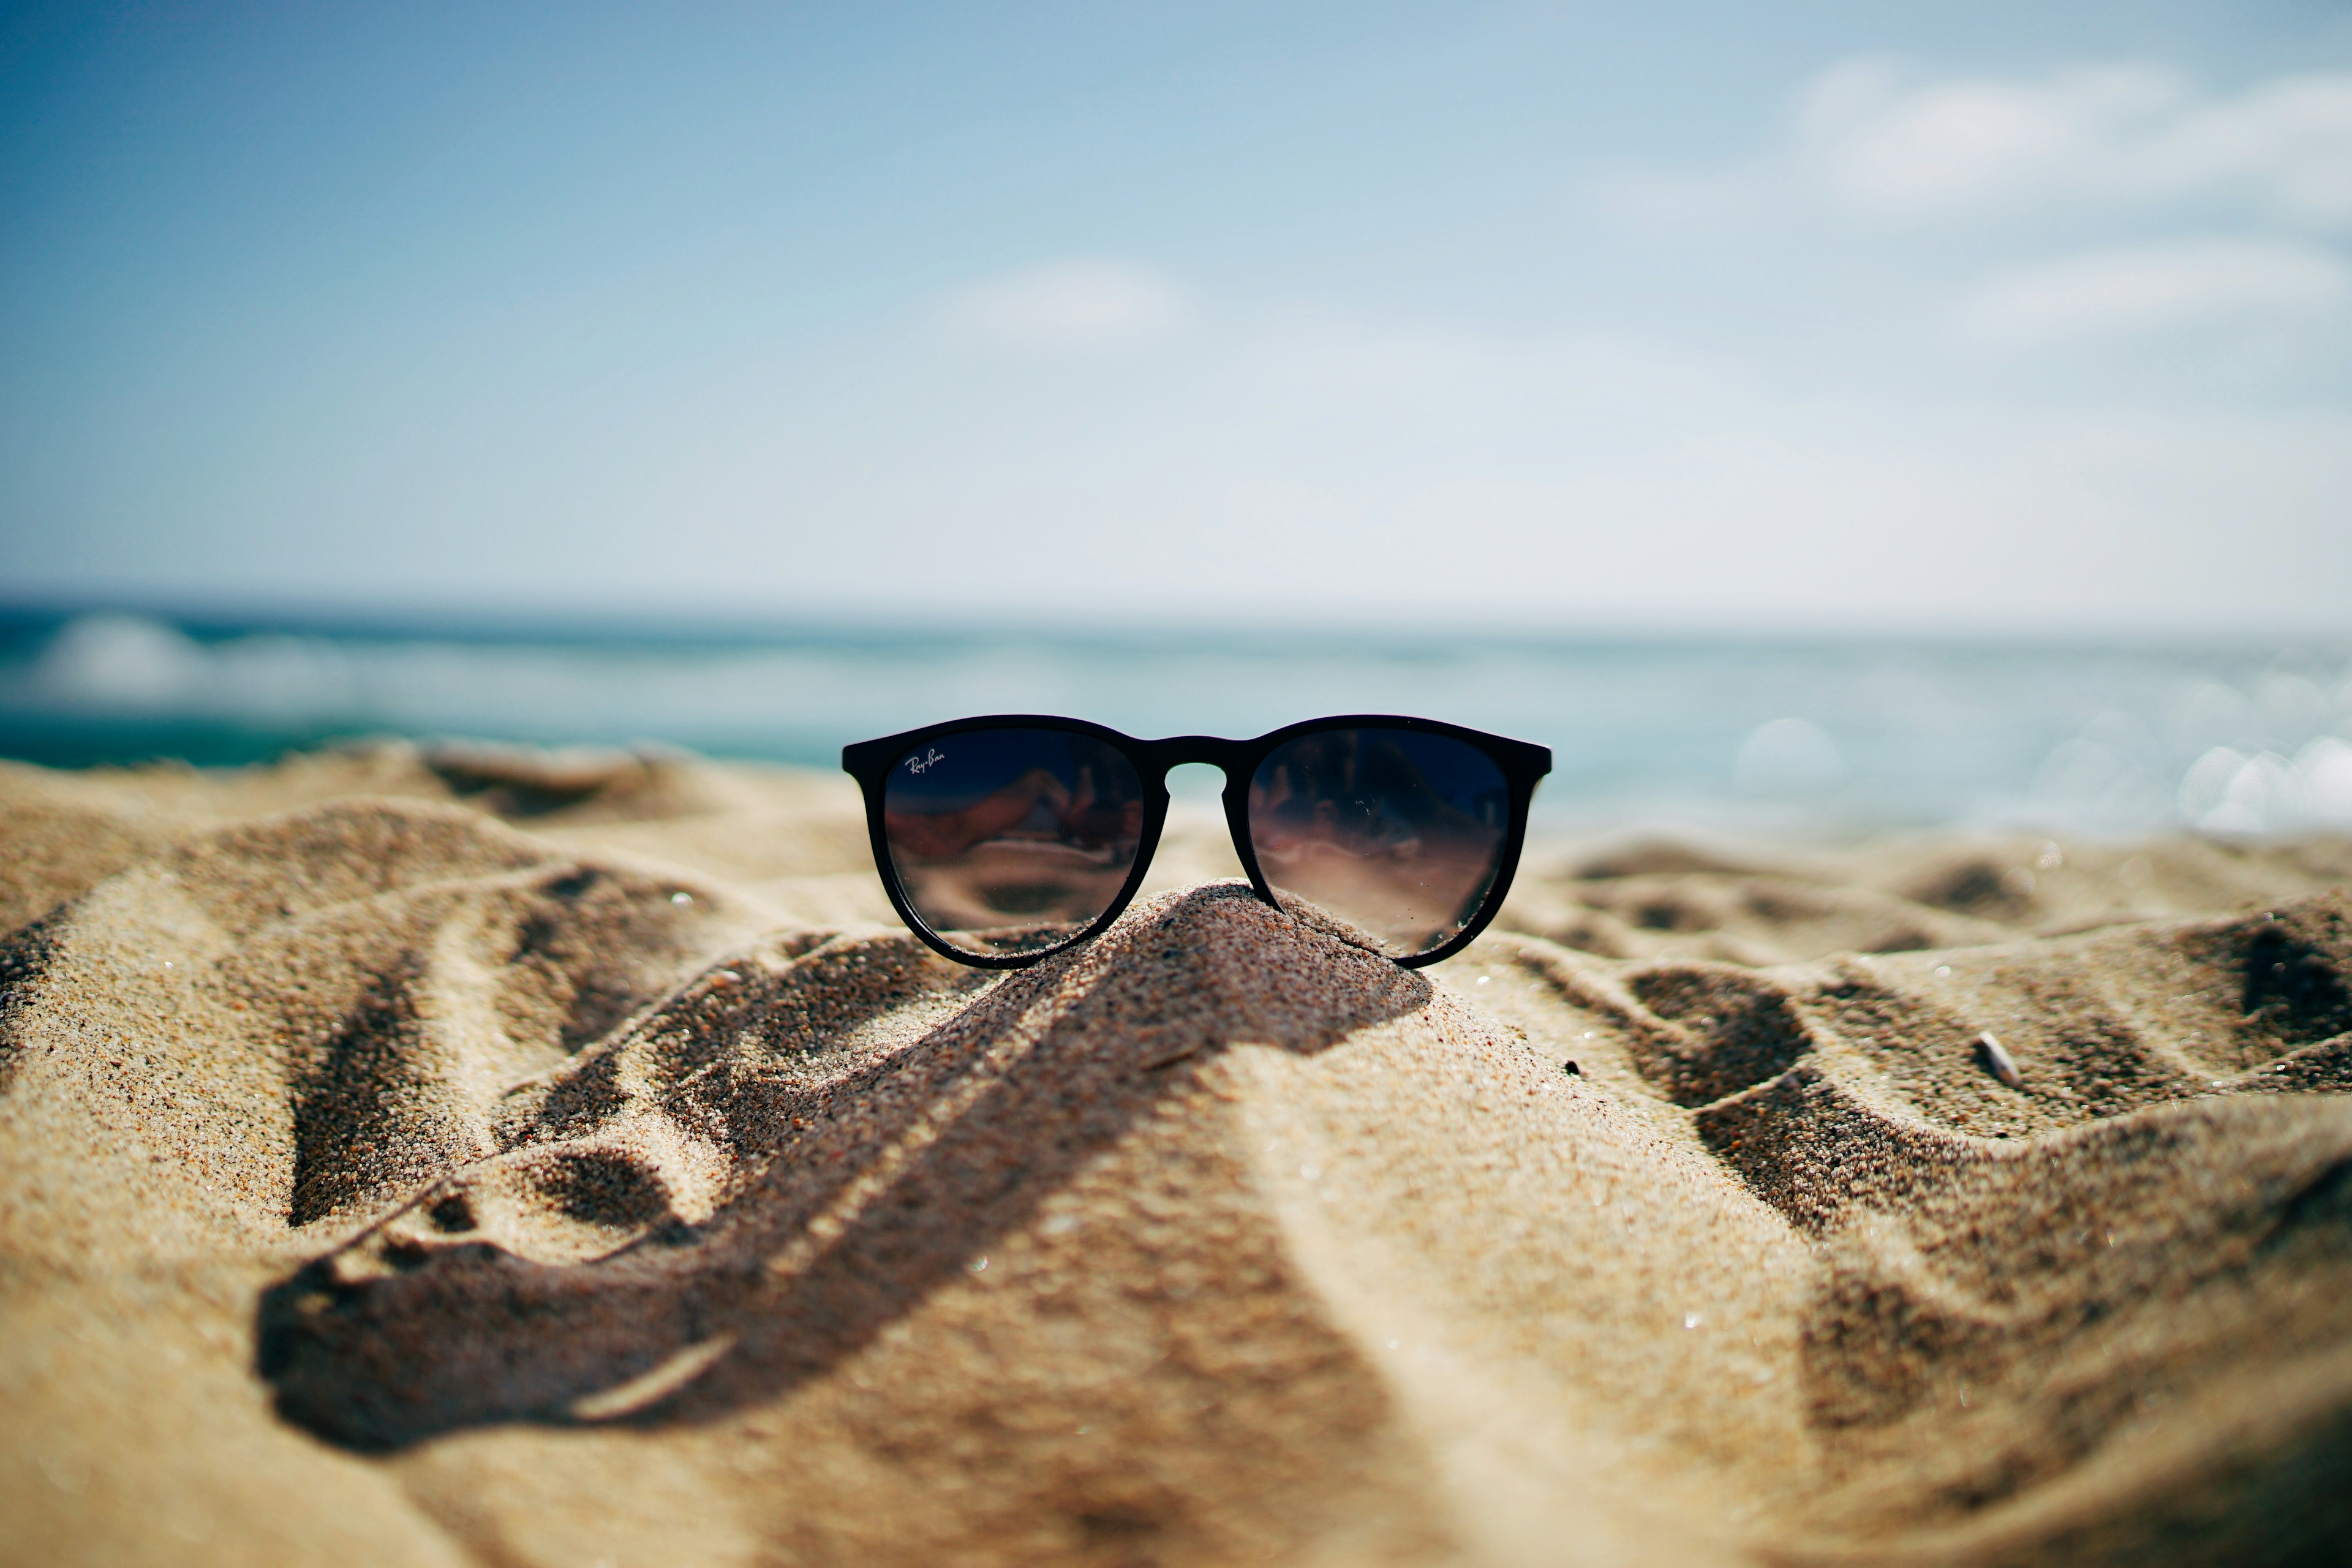 occhiali da sole sulla sabbia: ecco le mete dove viaggiare senza passaporto